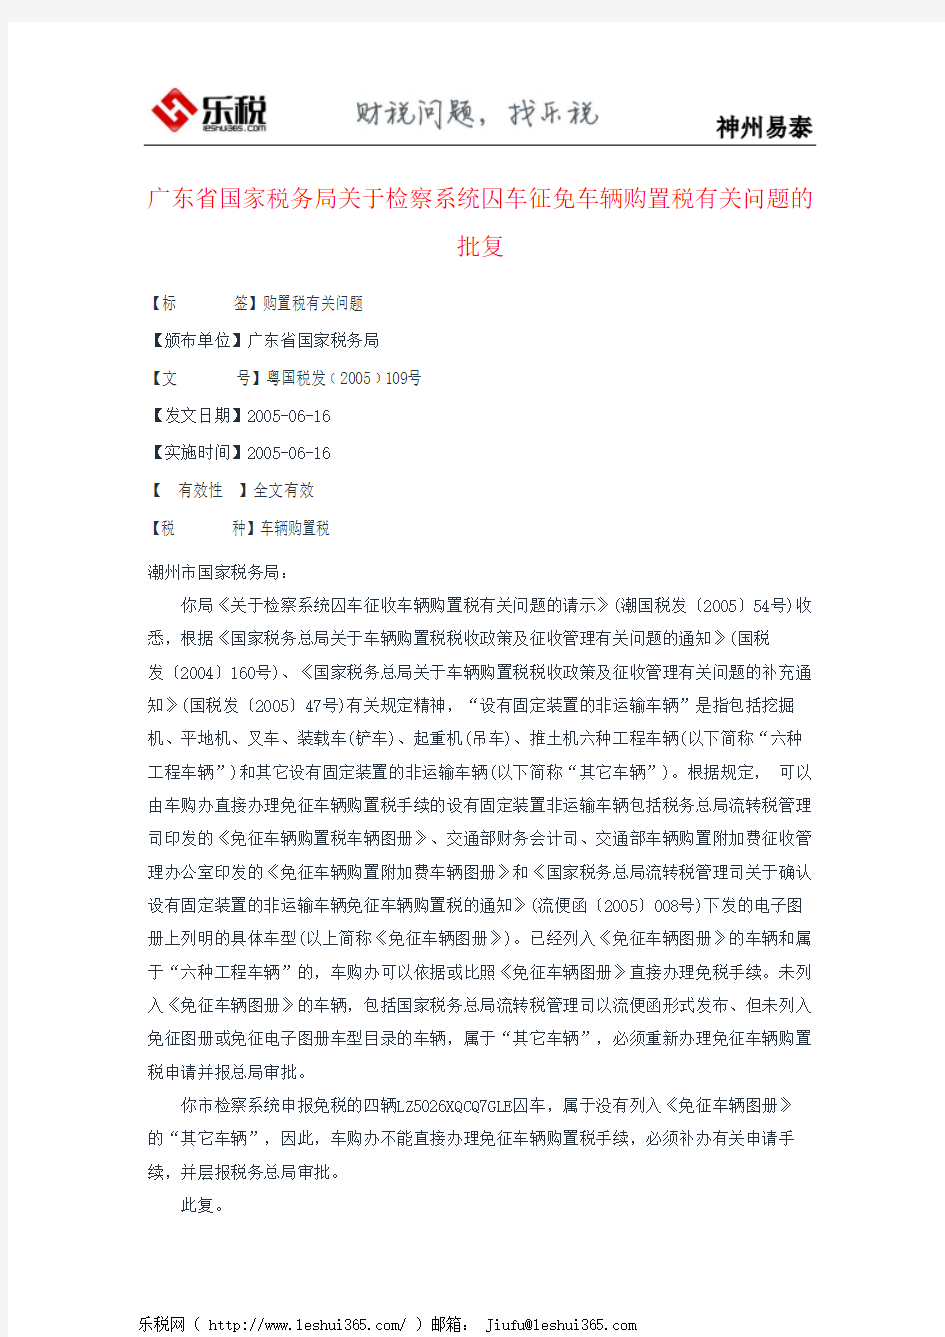 广东省国家税务局关于检察系统囚车征免车辆购置税有关问题的批复